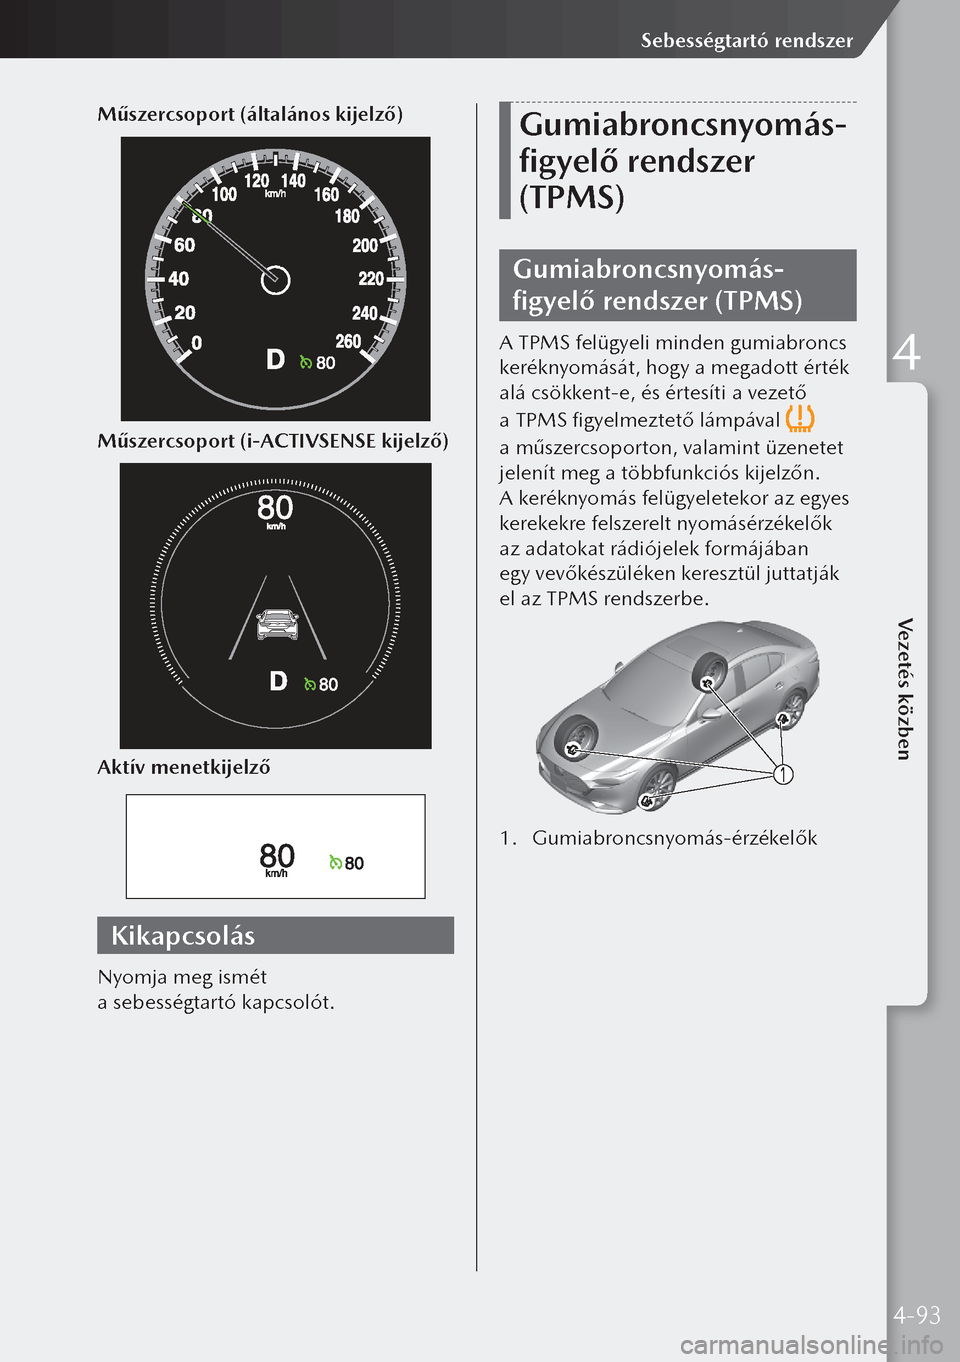 MAZDA MODEL 3 HATCHBACK 2019  Kezelési útmutató (in Hungarian) Műszercsoport (általános kijelző)
Műszercsoport (i-ACTIVSENSE kijelző)
Aktív menetkijelző
Kikapcsolás
Nyomja meg ismét 
a sebességtartó kapcsolót.
Gumiabroncsnyomás-
figyelő rendszer 